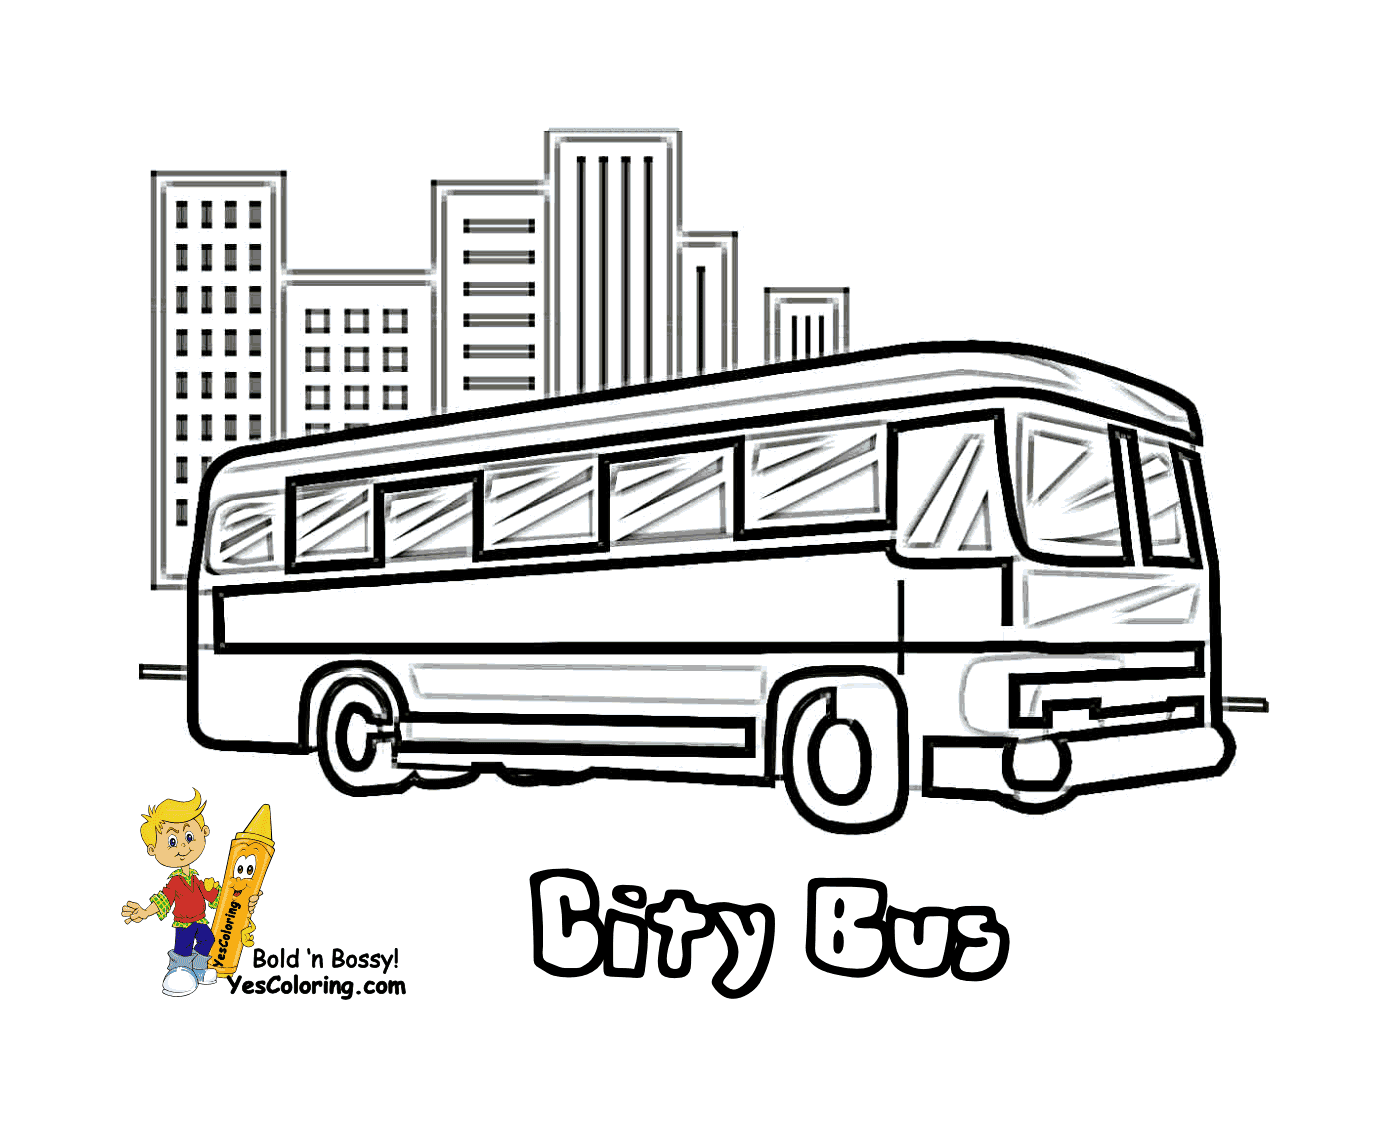  Um ônibus urbano circula pela cidade 